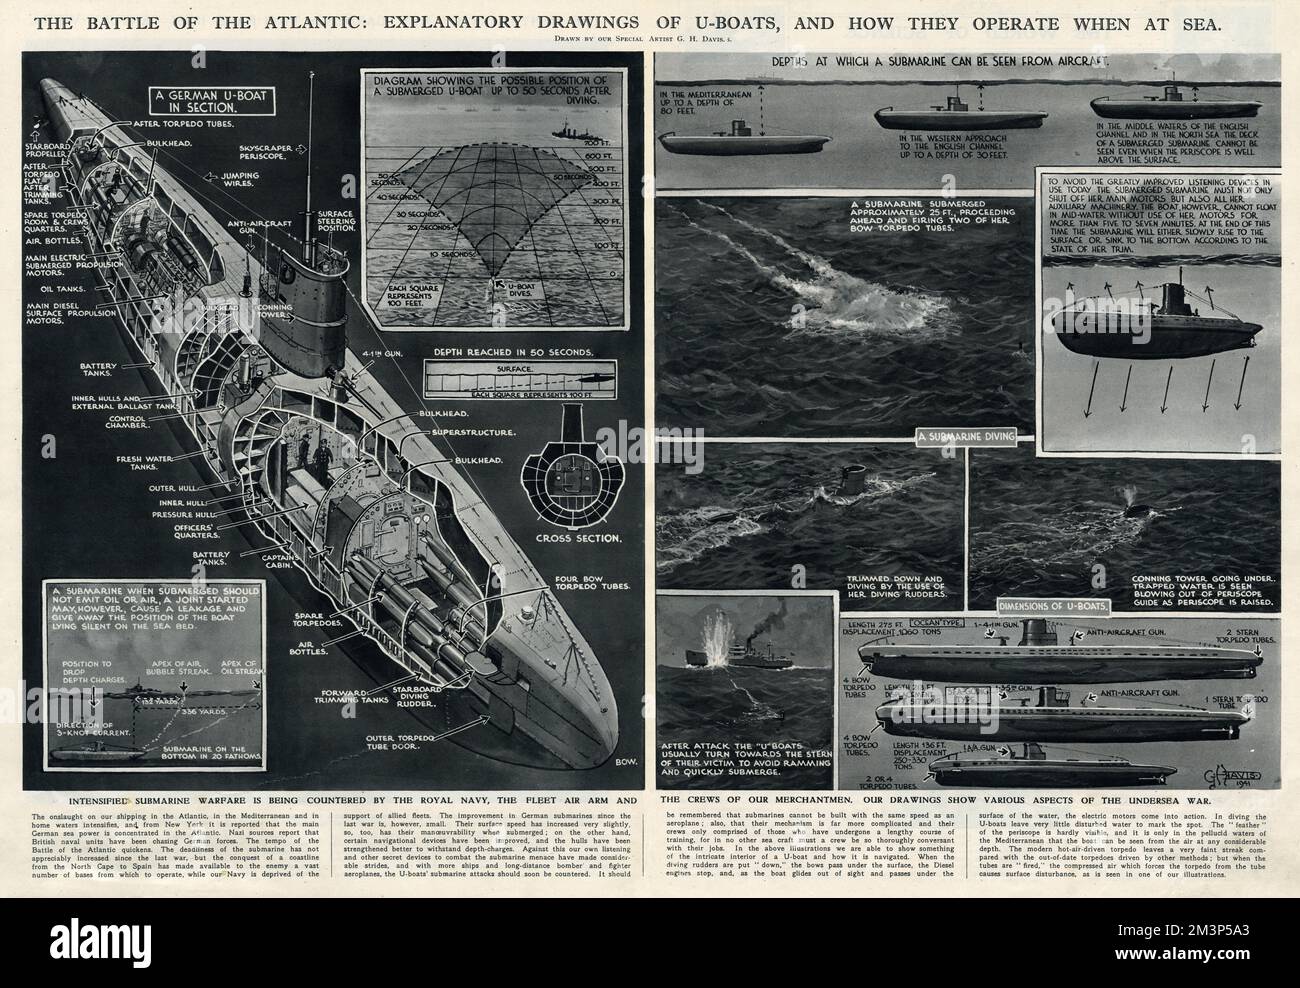 Die Schlacht am Atlantik: Erläuternde Zeichnungen deutscher U-Boote (U-Boote) und wie sie auf See arbeiten. Einige Aspekte der Unterwasseraktivitäten im Zweiten Weltkrieg. Datum: 1941 Stockfoto